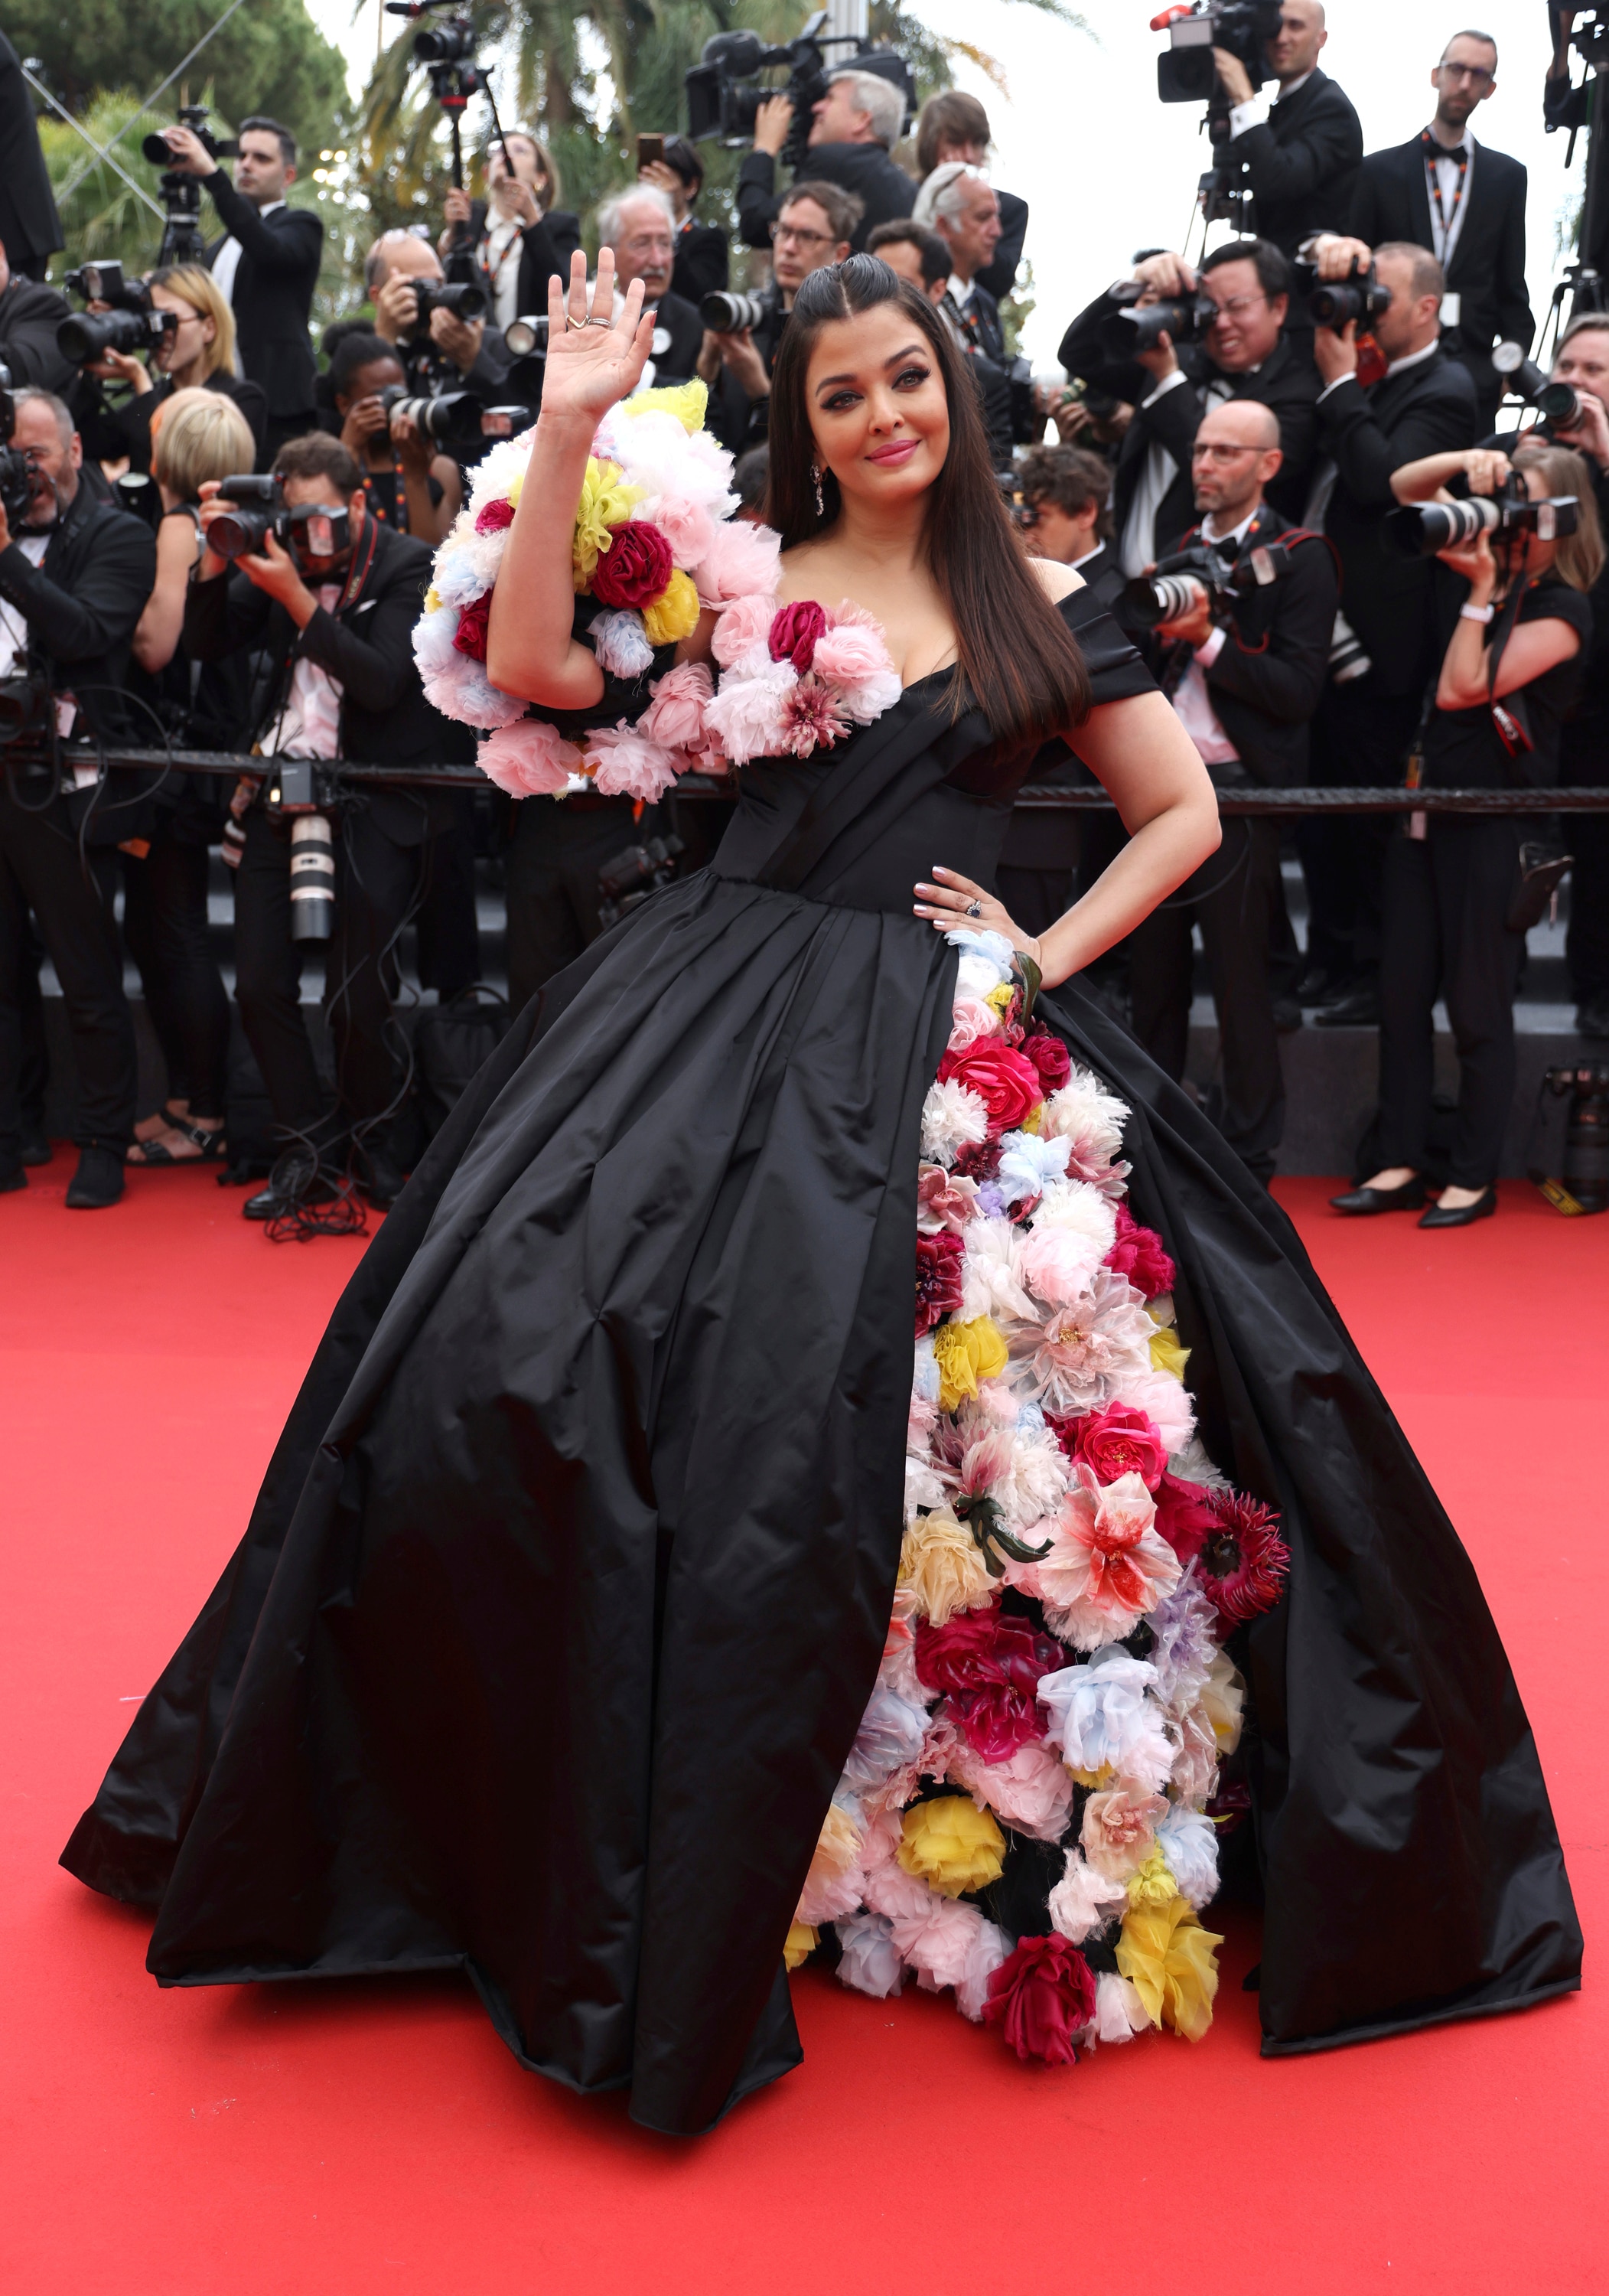 艾西瓦娅·雷·巴强 (Aishwarya Rai Bachchan) 身穿黑色蓬松长裙，薄纱花朵从裙子的开衩处垂落，形成袖子